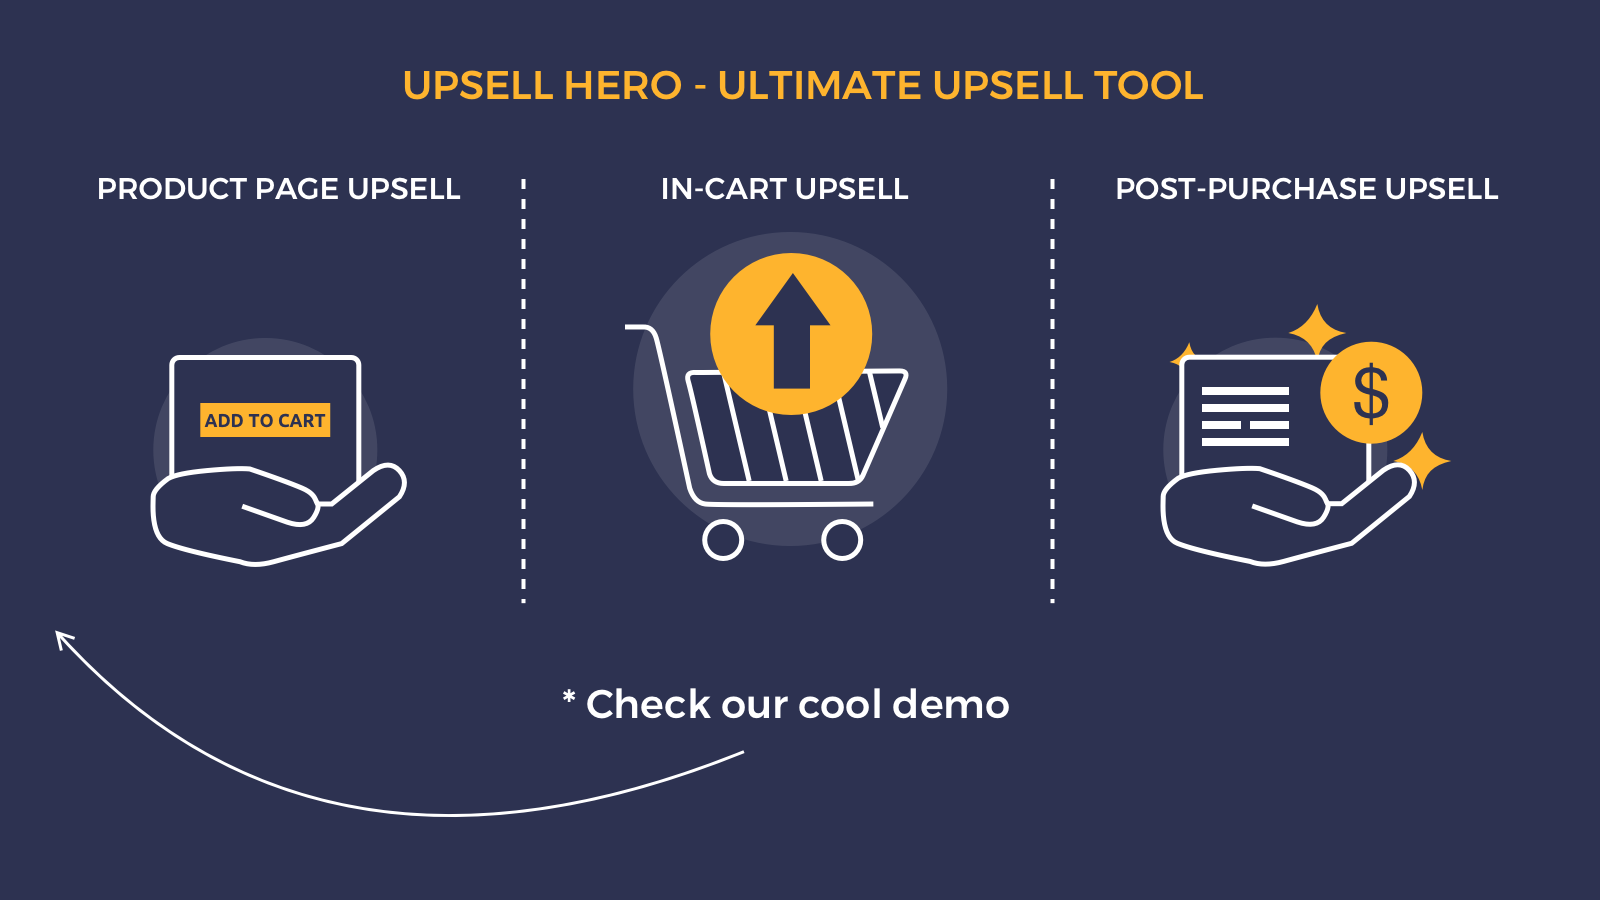 In winkelwagen upsell, toevoegen aan winkelwagen popup na aankoop one click upsell